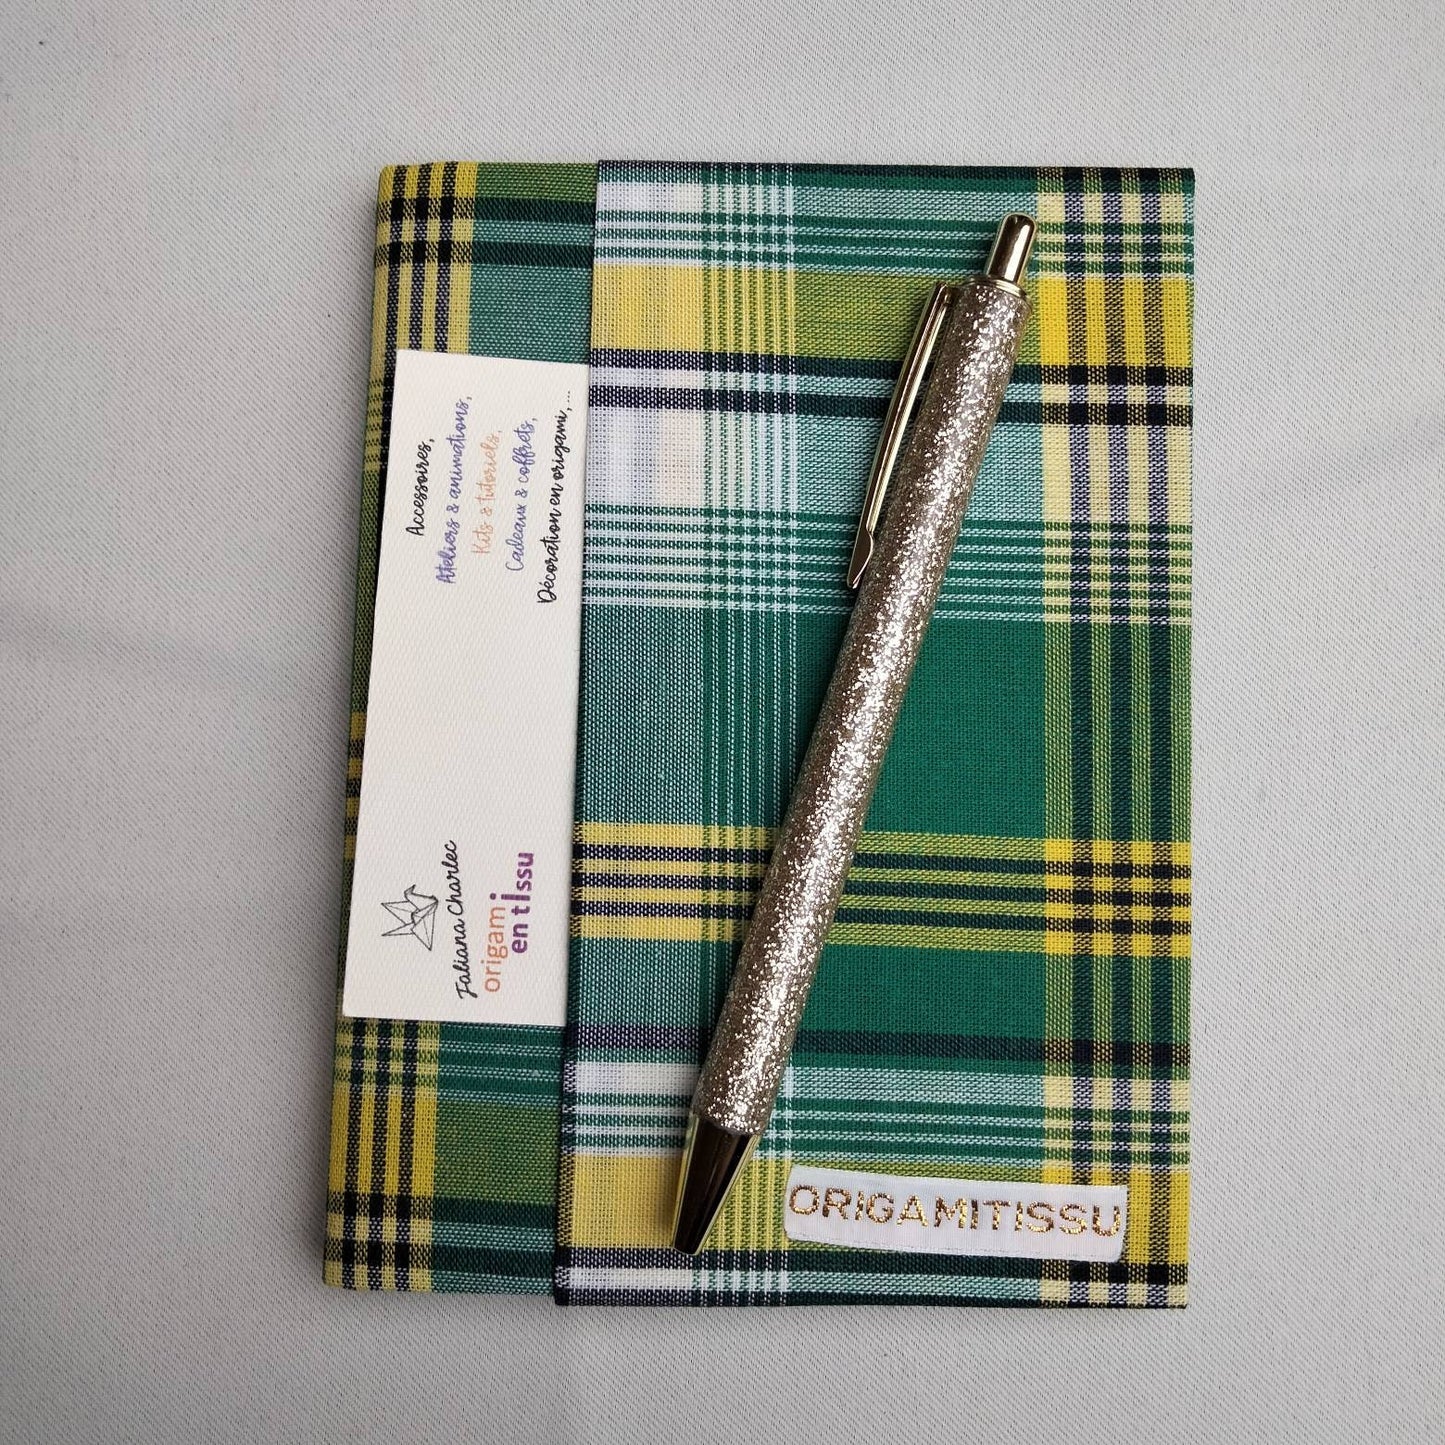 Avec ce protège-carnet "Tissu madras" donnez un look élégant à vos notes quotidiennes, de voyage, carnet de gratitude